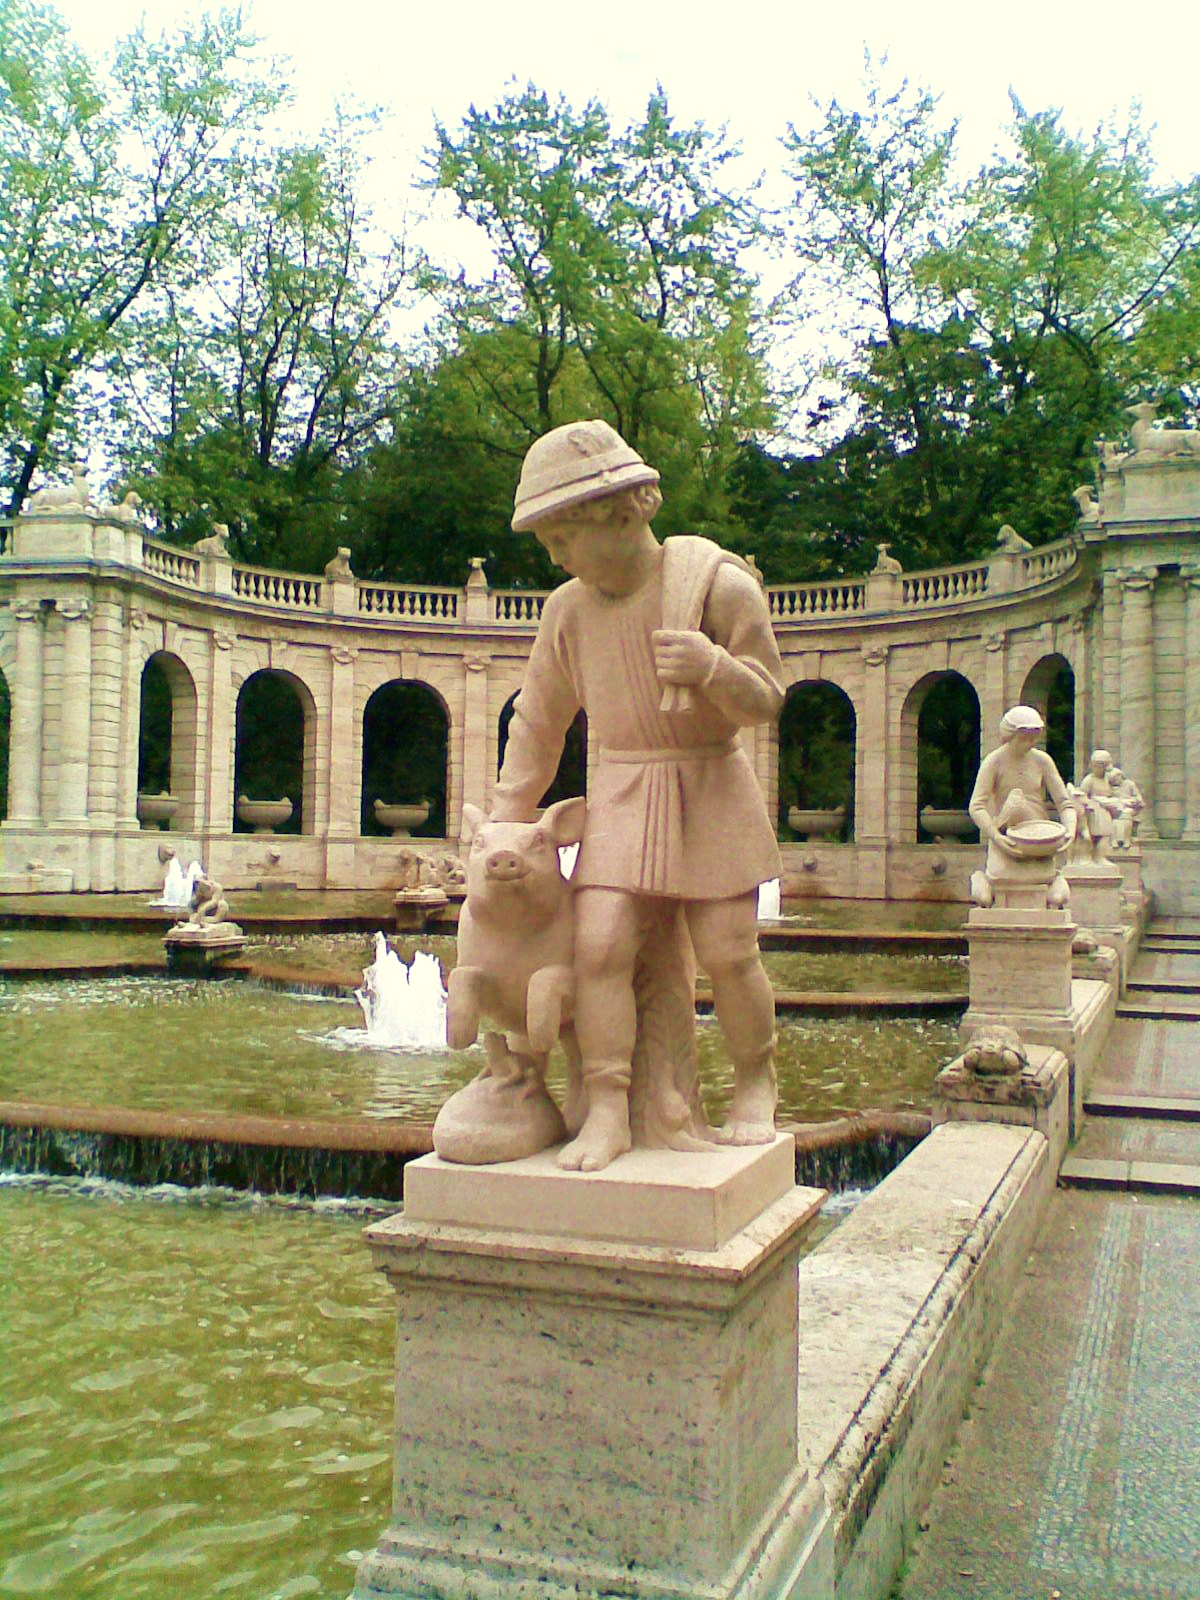 Hans im Glück Märchenbrunnen im Volkspark Friedrichshain Hans im Glück Quelle: http://de.wikipedia.org/wiki/datei:märchenbrunnen_-_hans_im_glück_307.